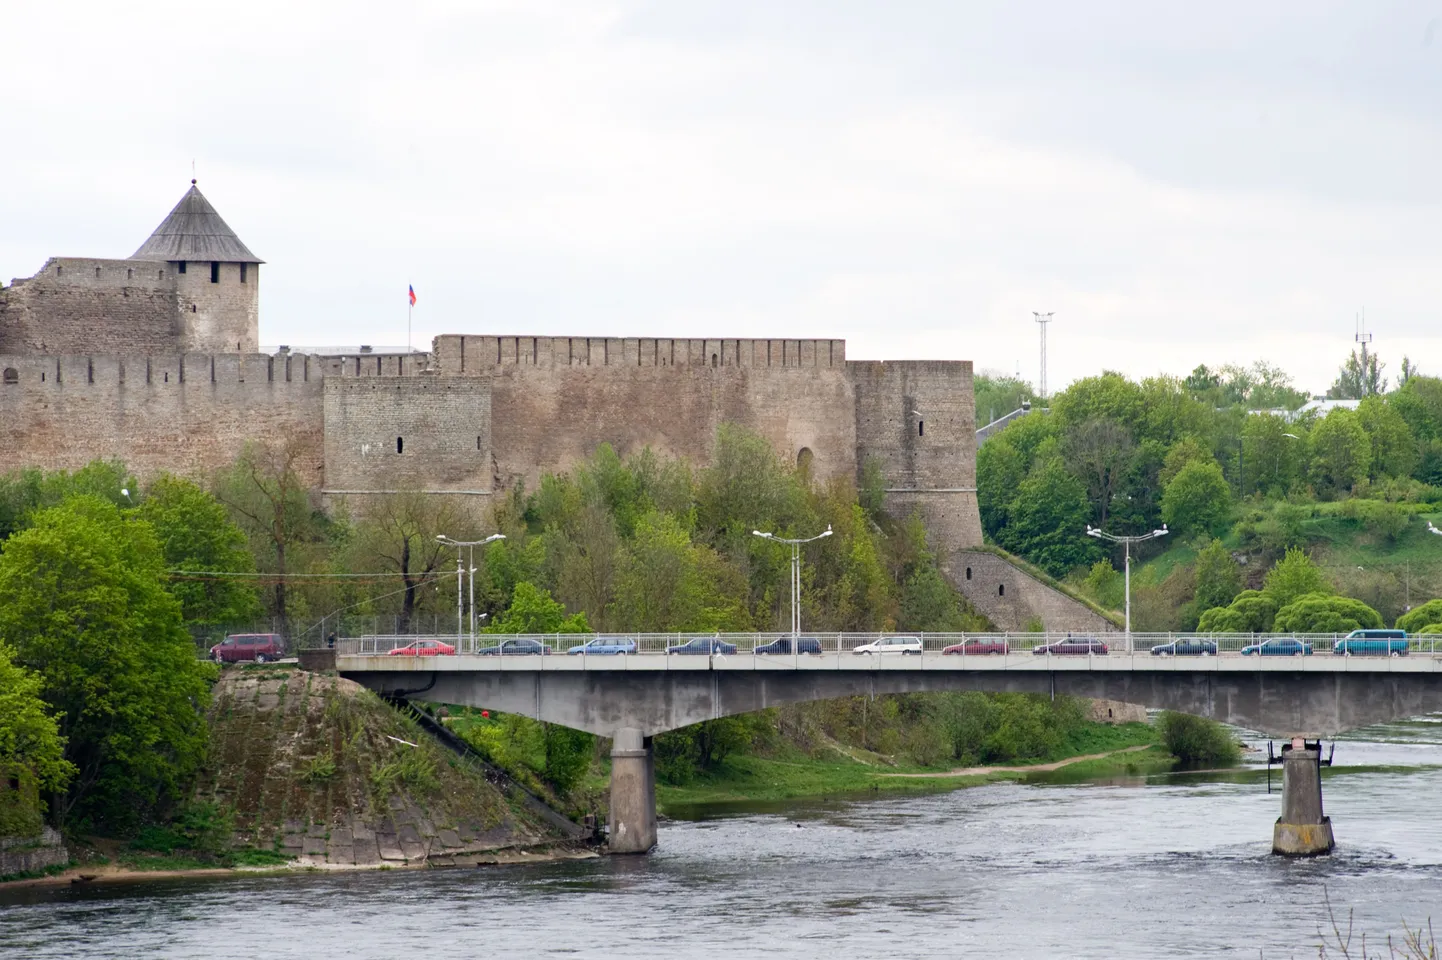 По сценарию «Моста» половинки двух трупов находят на пограничном мосту между Эстонией и Россией, но Эстония запретила съемки на мосту Дружбы, так что его мы в сериале не увидим.